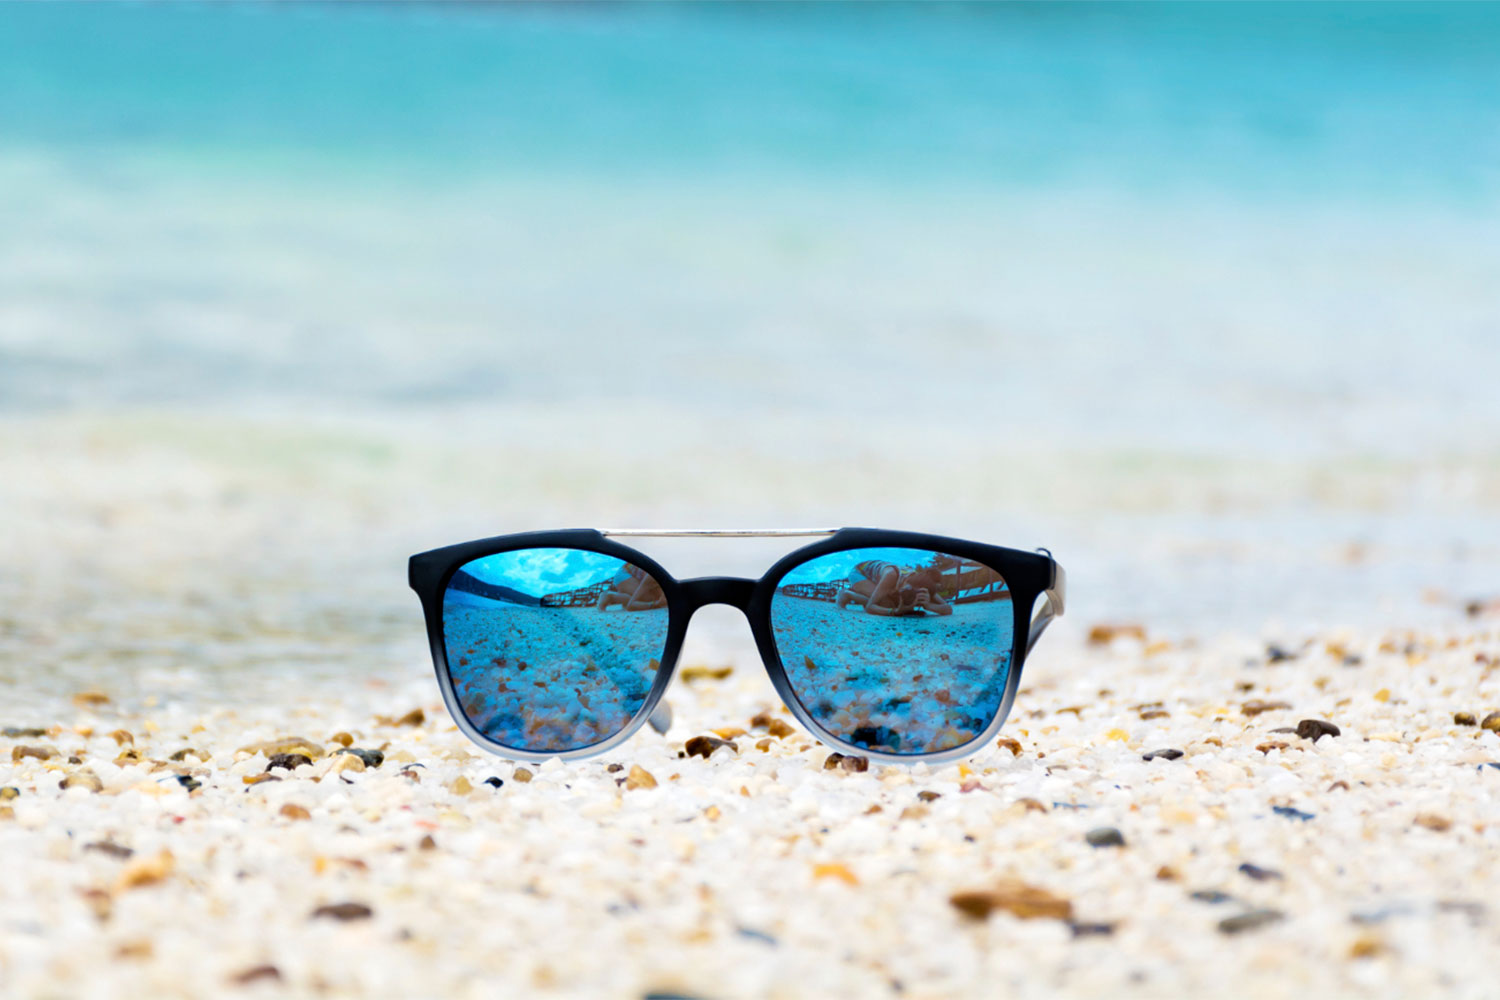 Óculos polarizados na areia de uma praia.